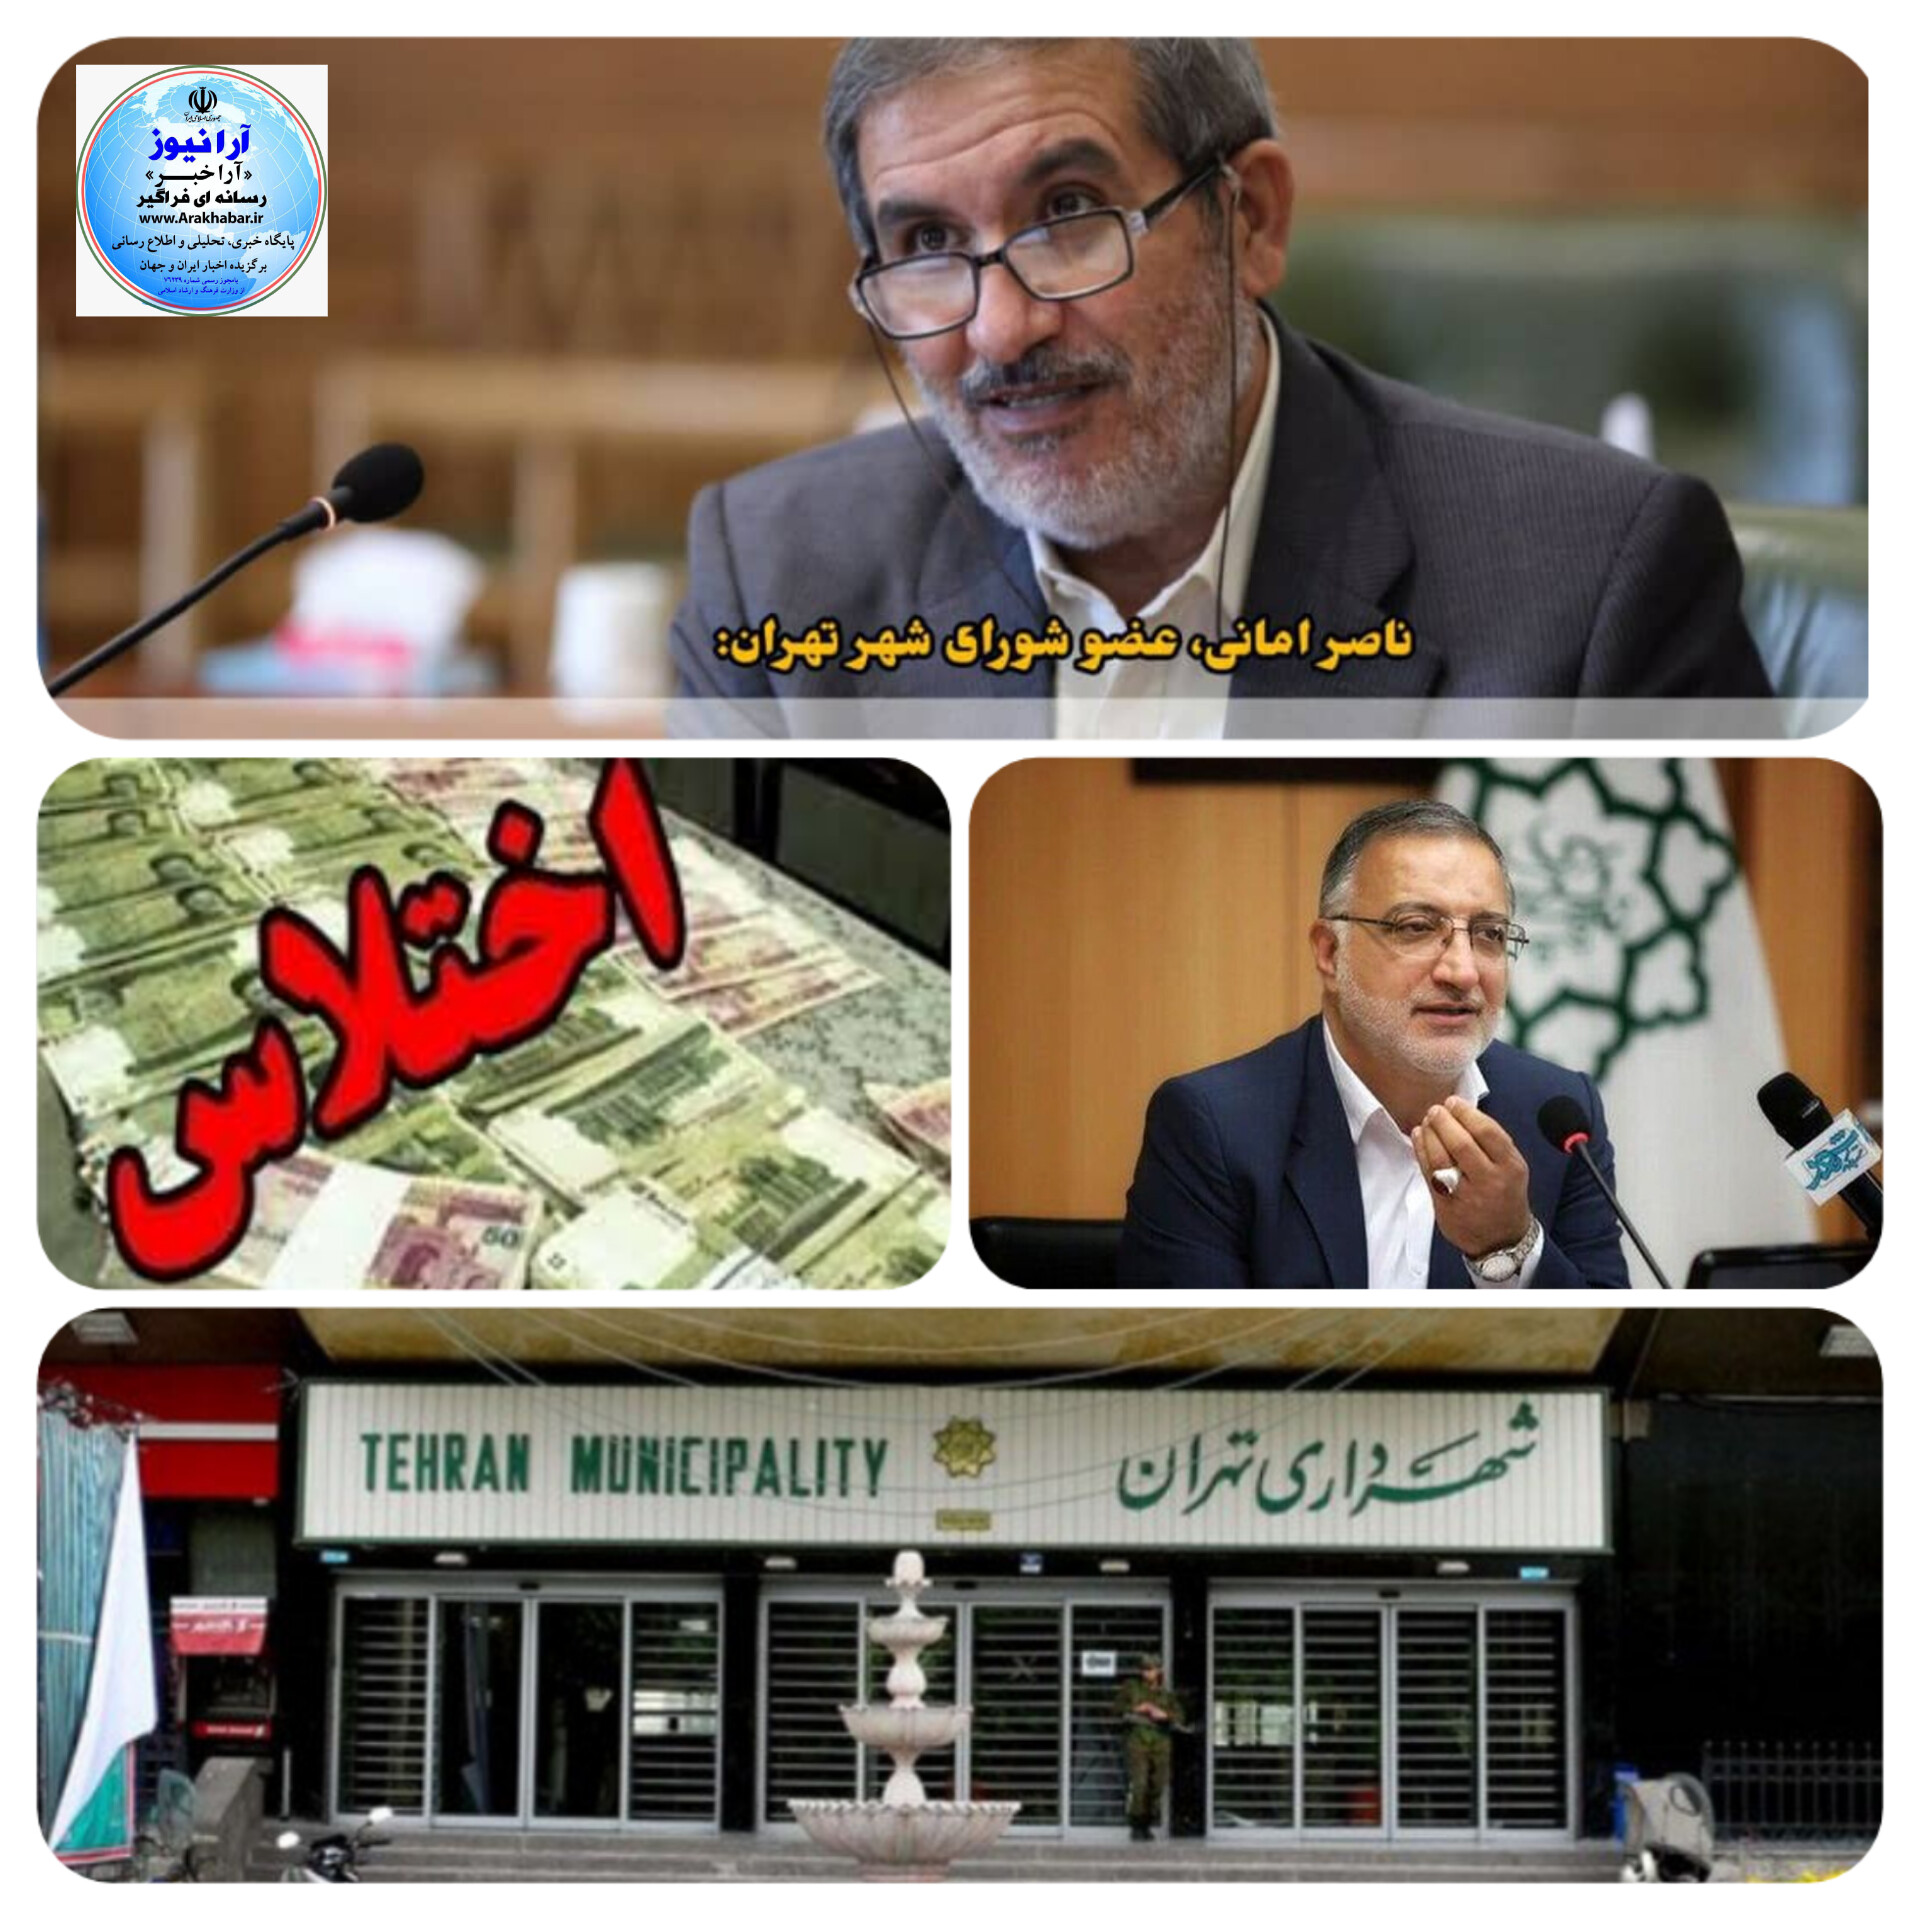 التیماتوم ناصر امانی عضو کمیسیون برنامه و بودجه شورای شهر تهران به زاکانی شهرداری  تهران